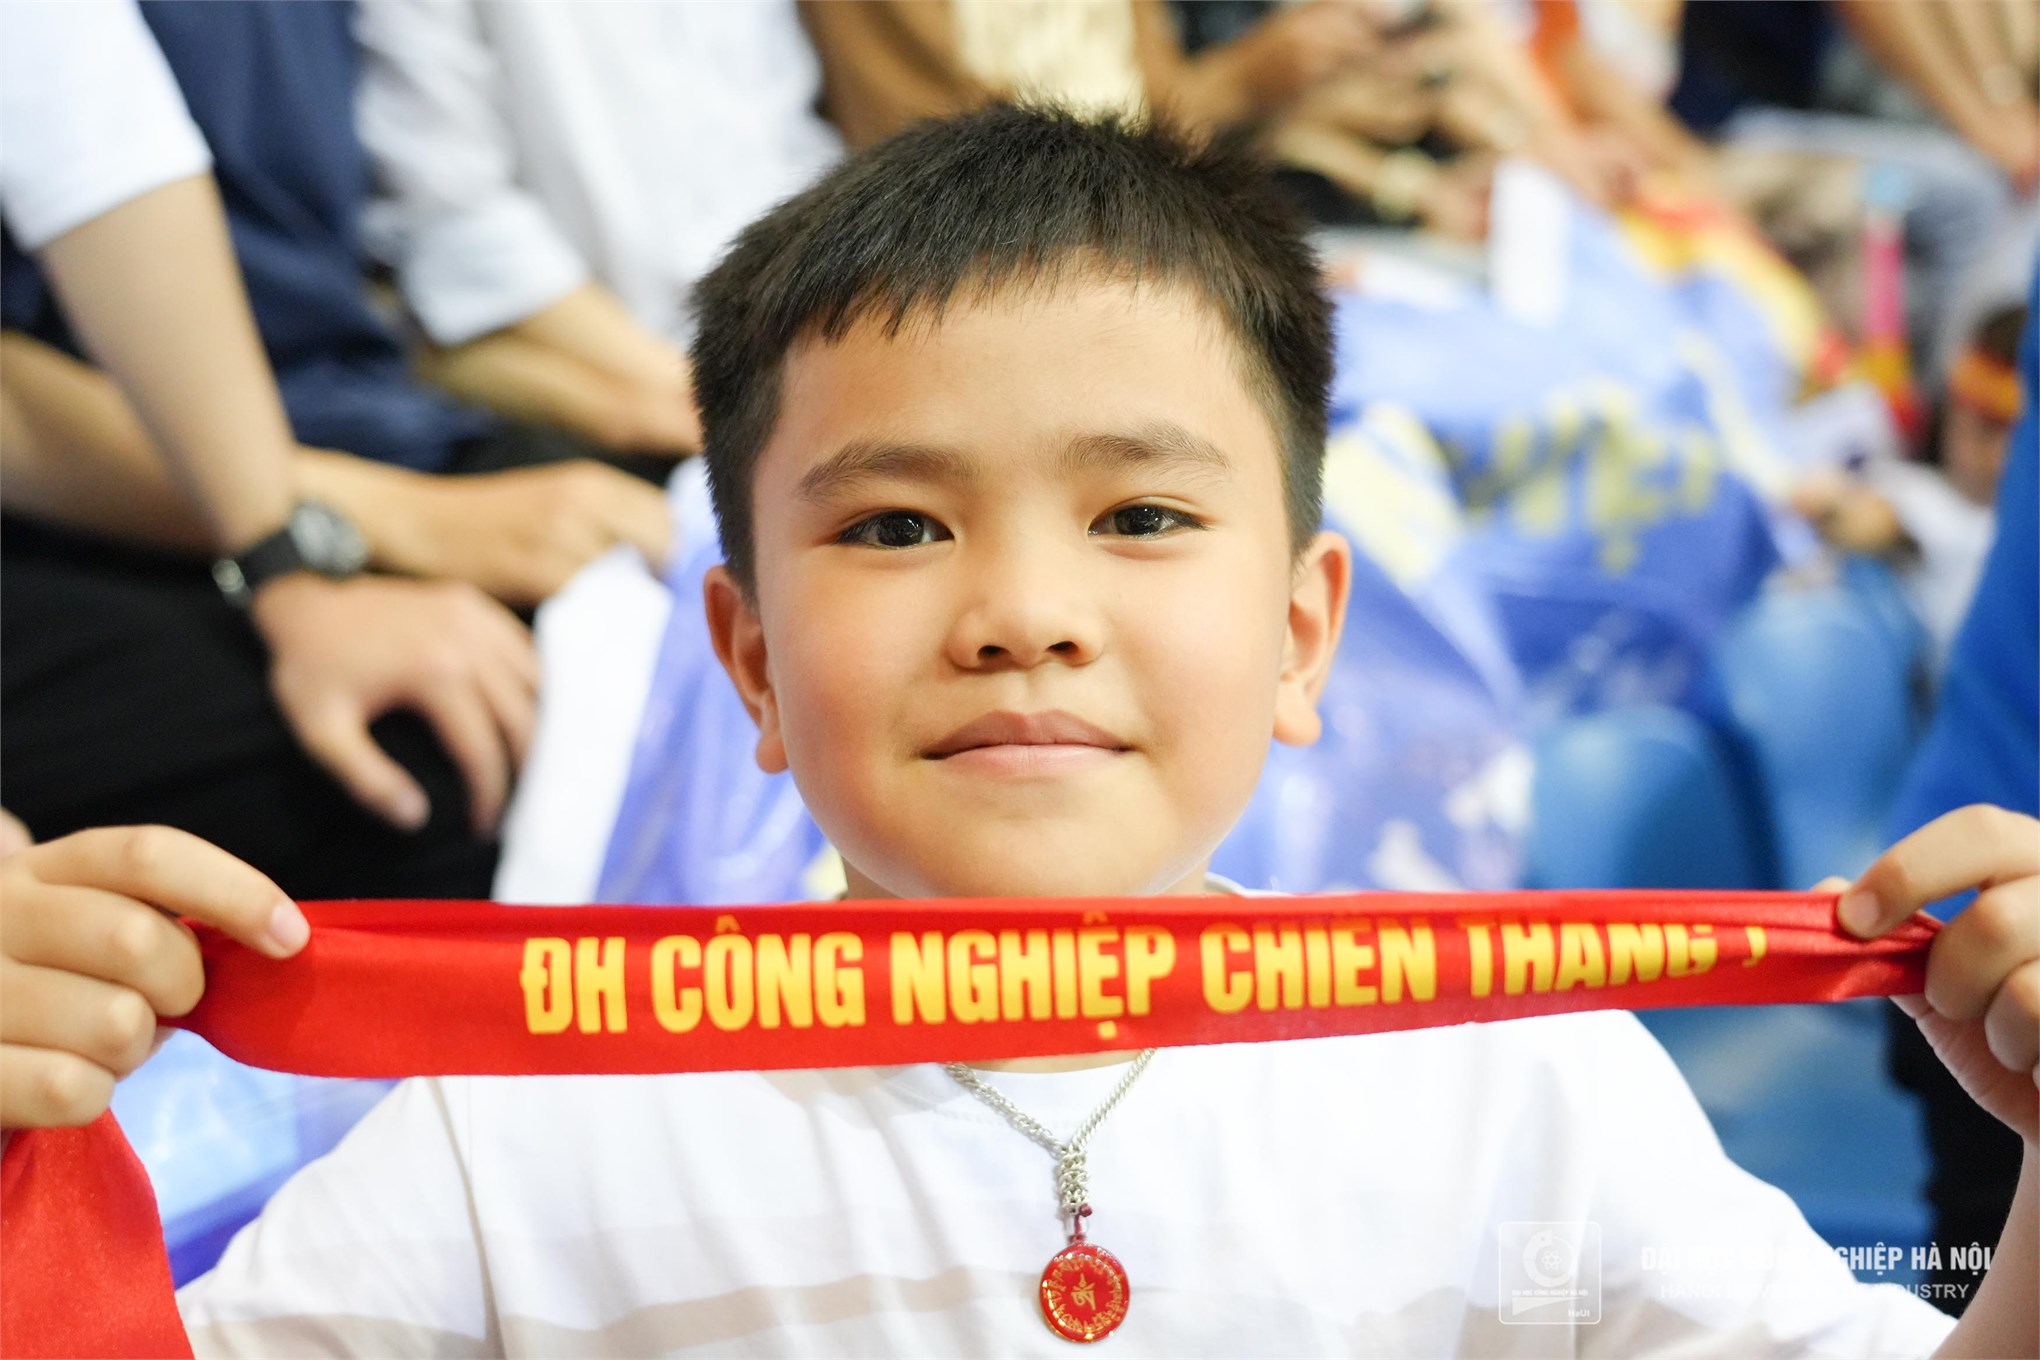 DCN - ĐT 02 vô địch Robocon Việt Nam 2023 